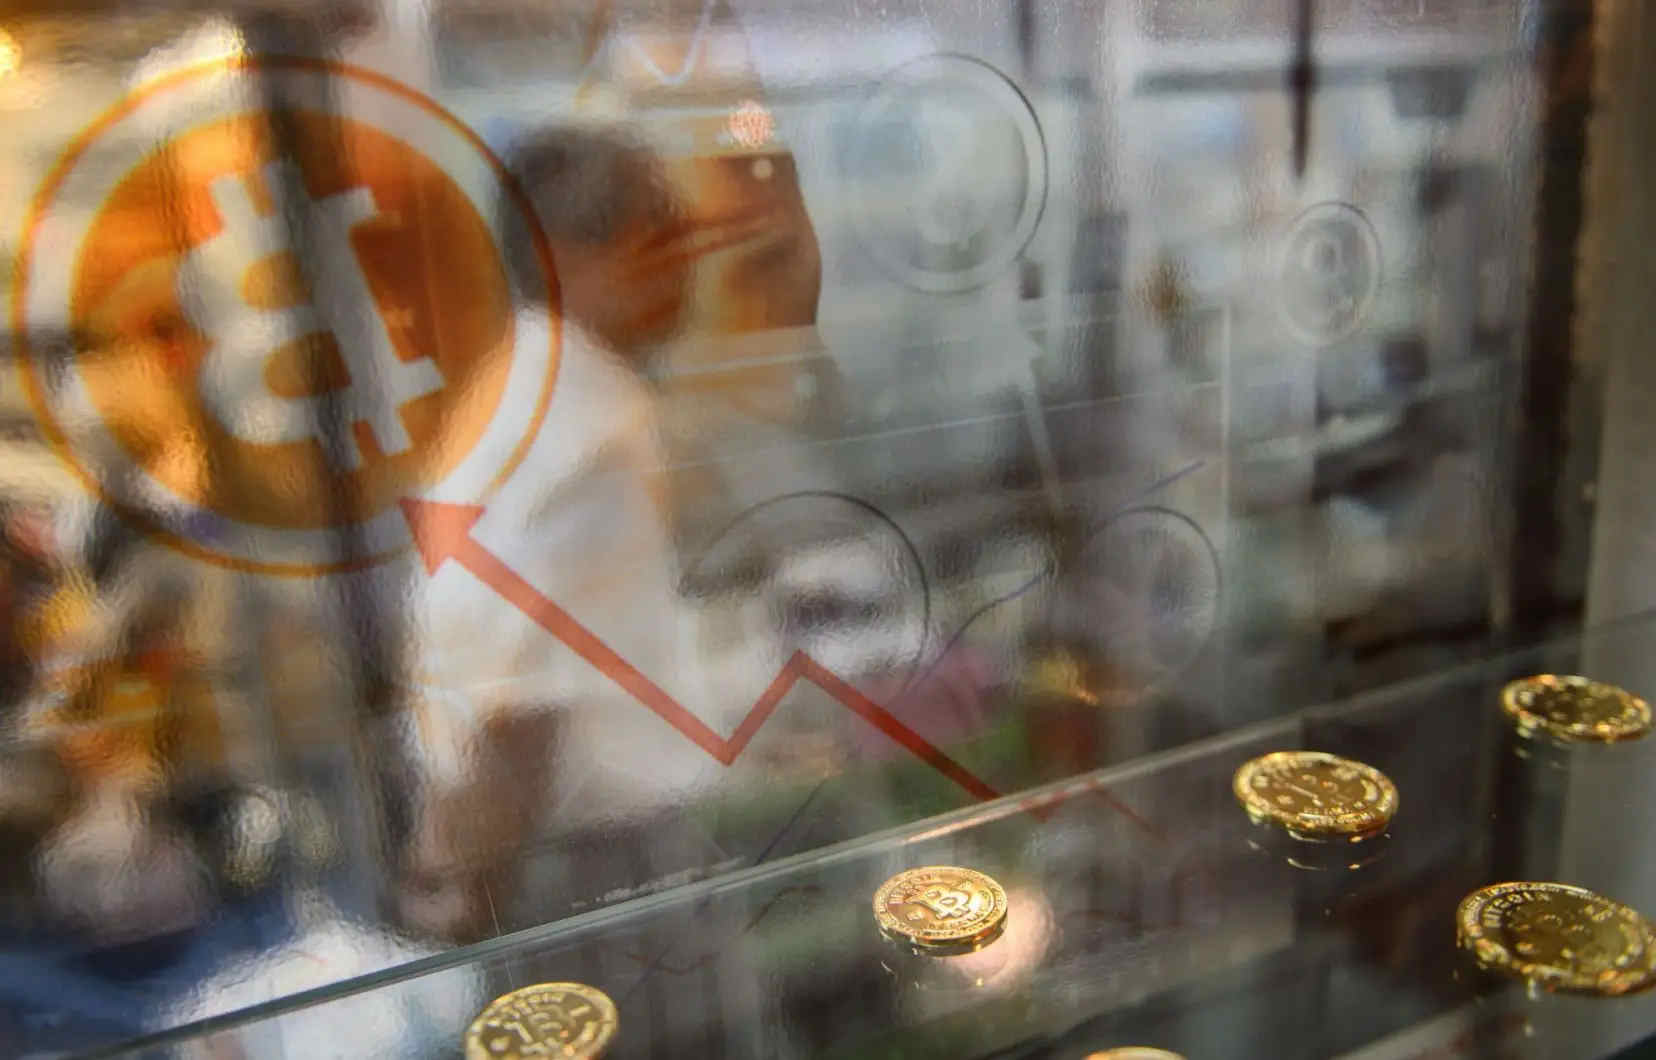 acheter du bitcoin d’autres crypto-monnaies